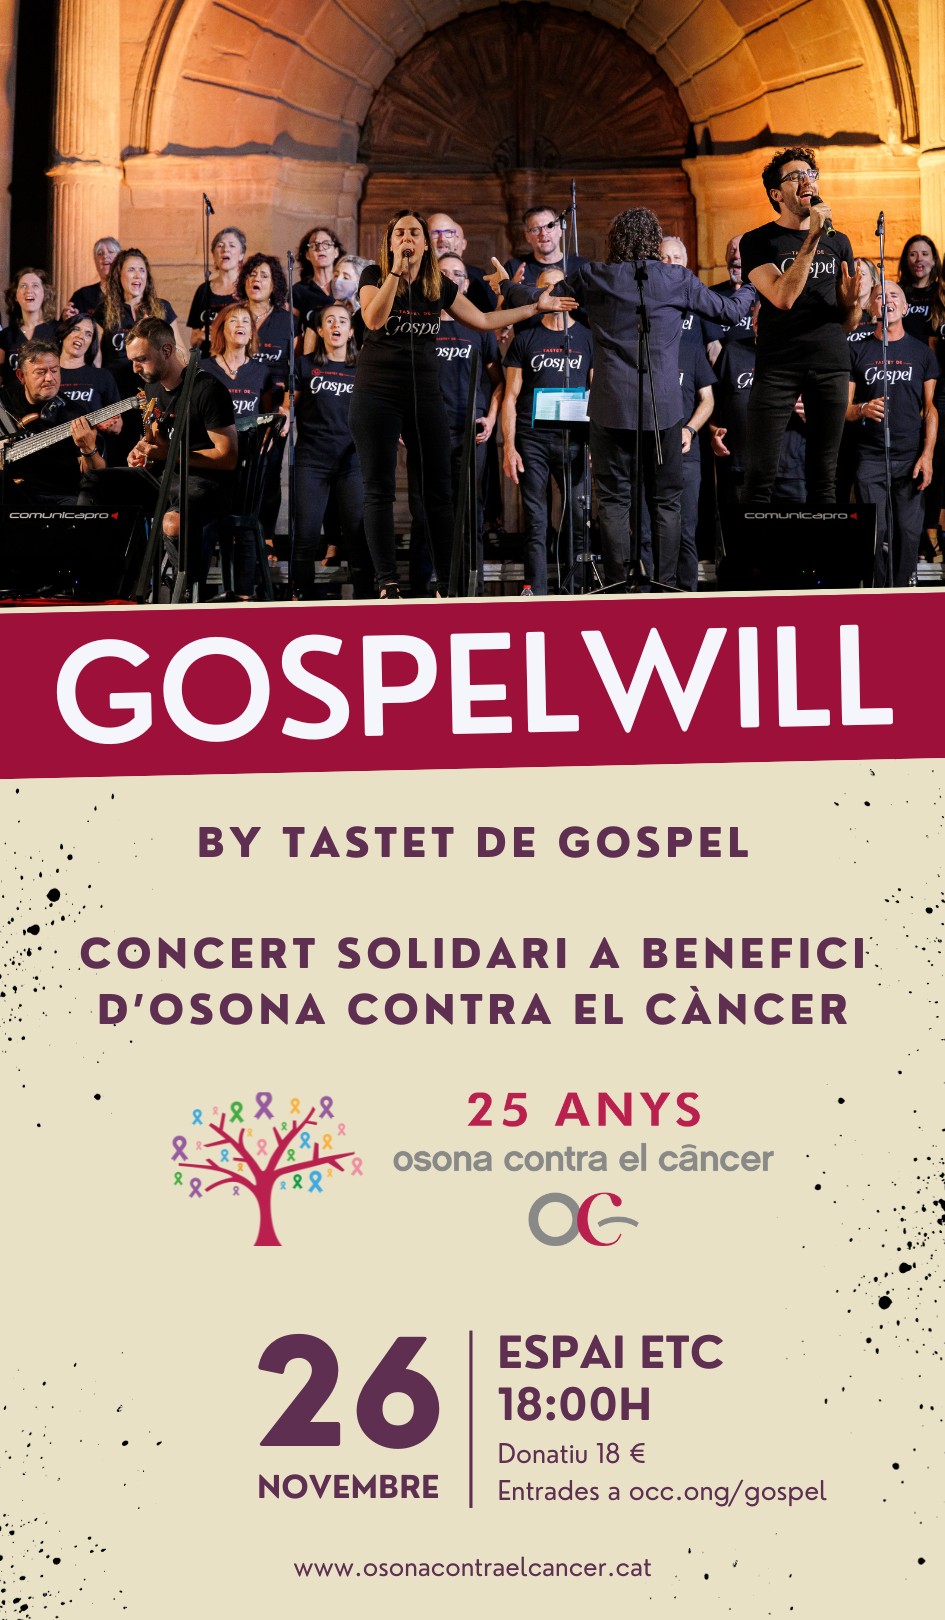 concert gospelwill tastet de gospel